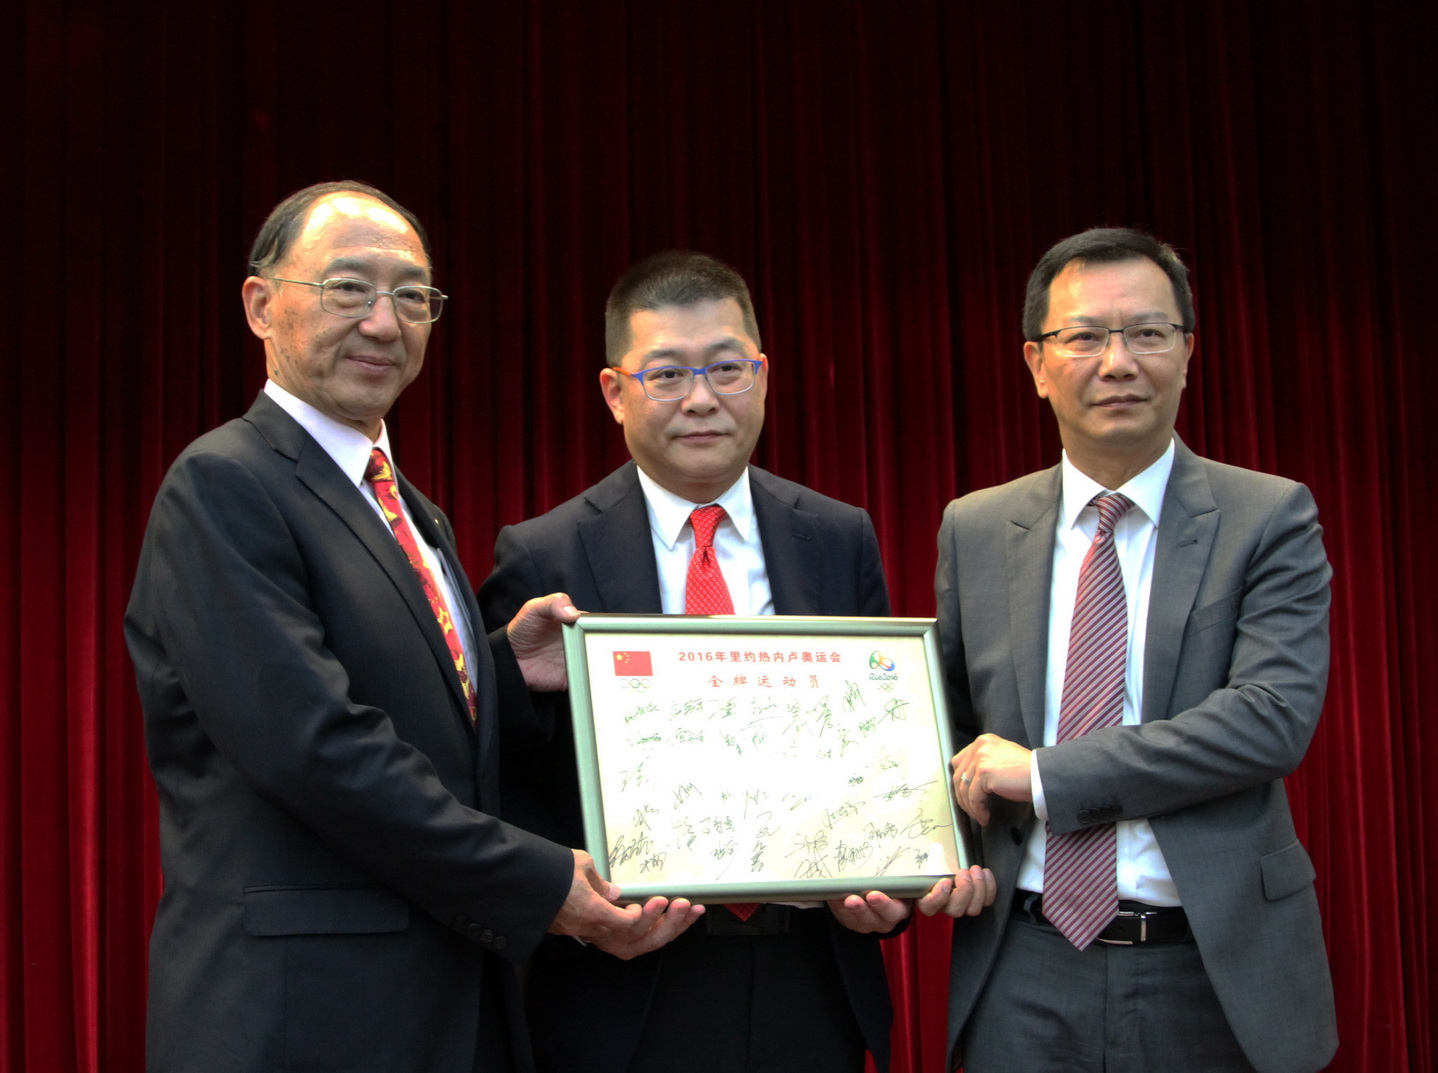 刘鹏(左一)向曾宪梓博士致送全体里约奥运中国金牌运动员的签名簿